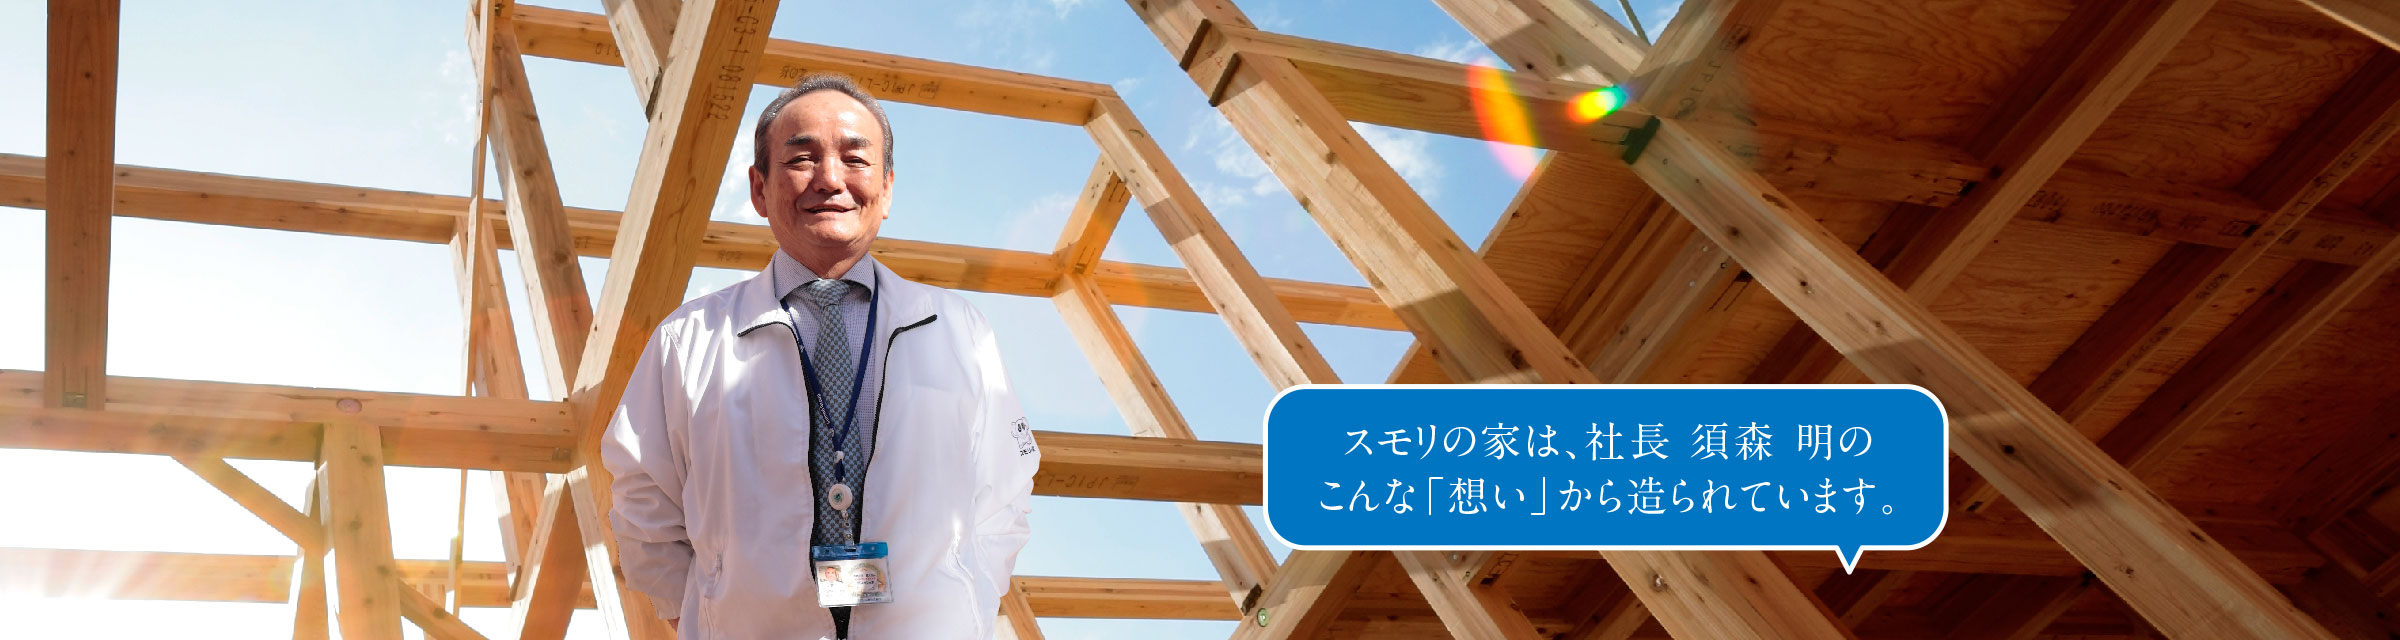 スモリの家は、社長 須森 明のこんな「想い」から造られています。